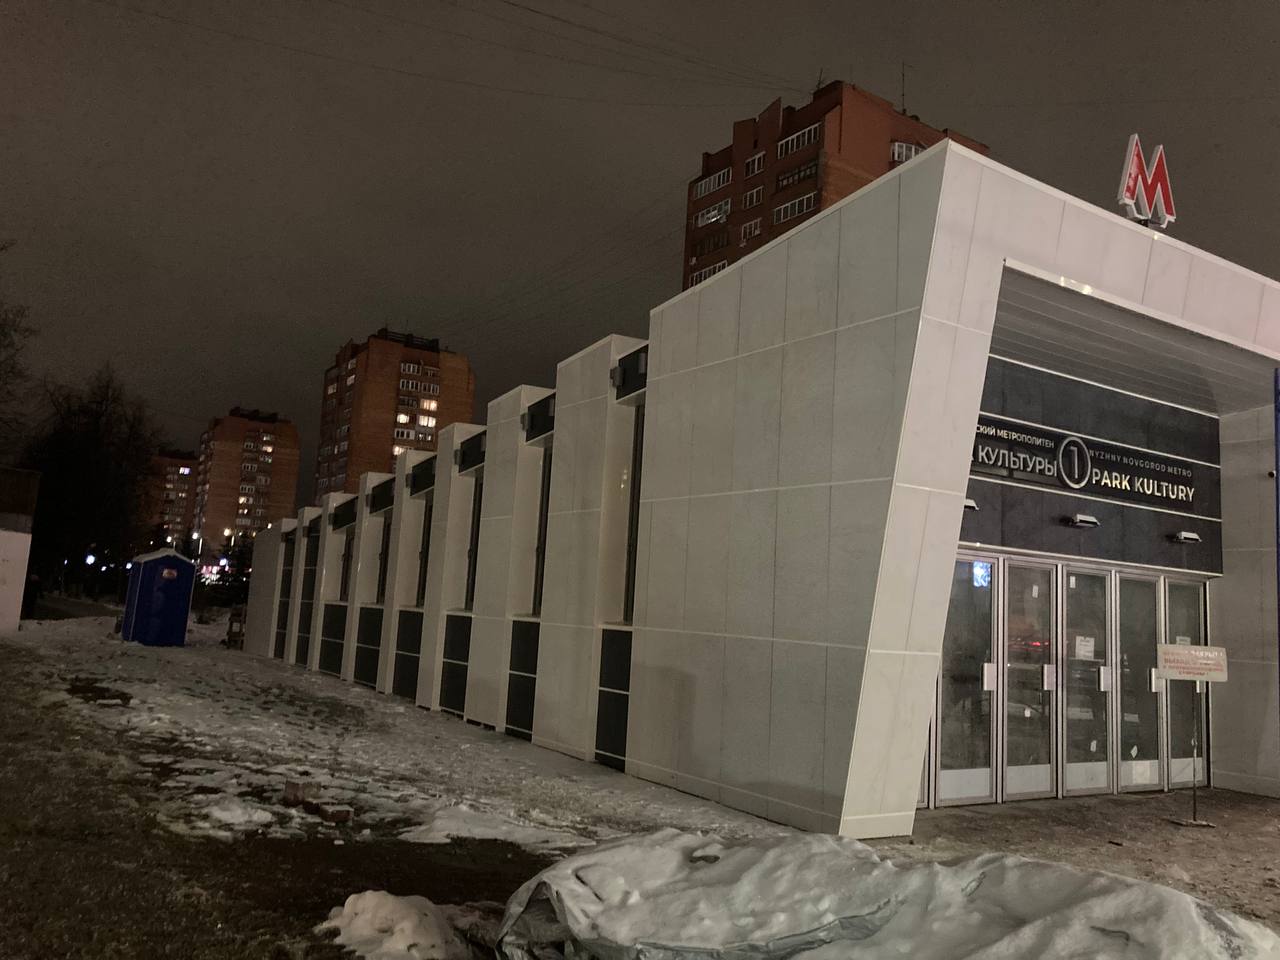 Три схода в метро открылись после капремонта в Нижнем Новгороде - фото 1